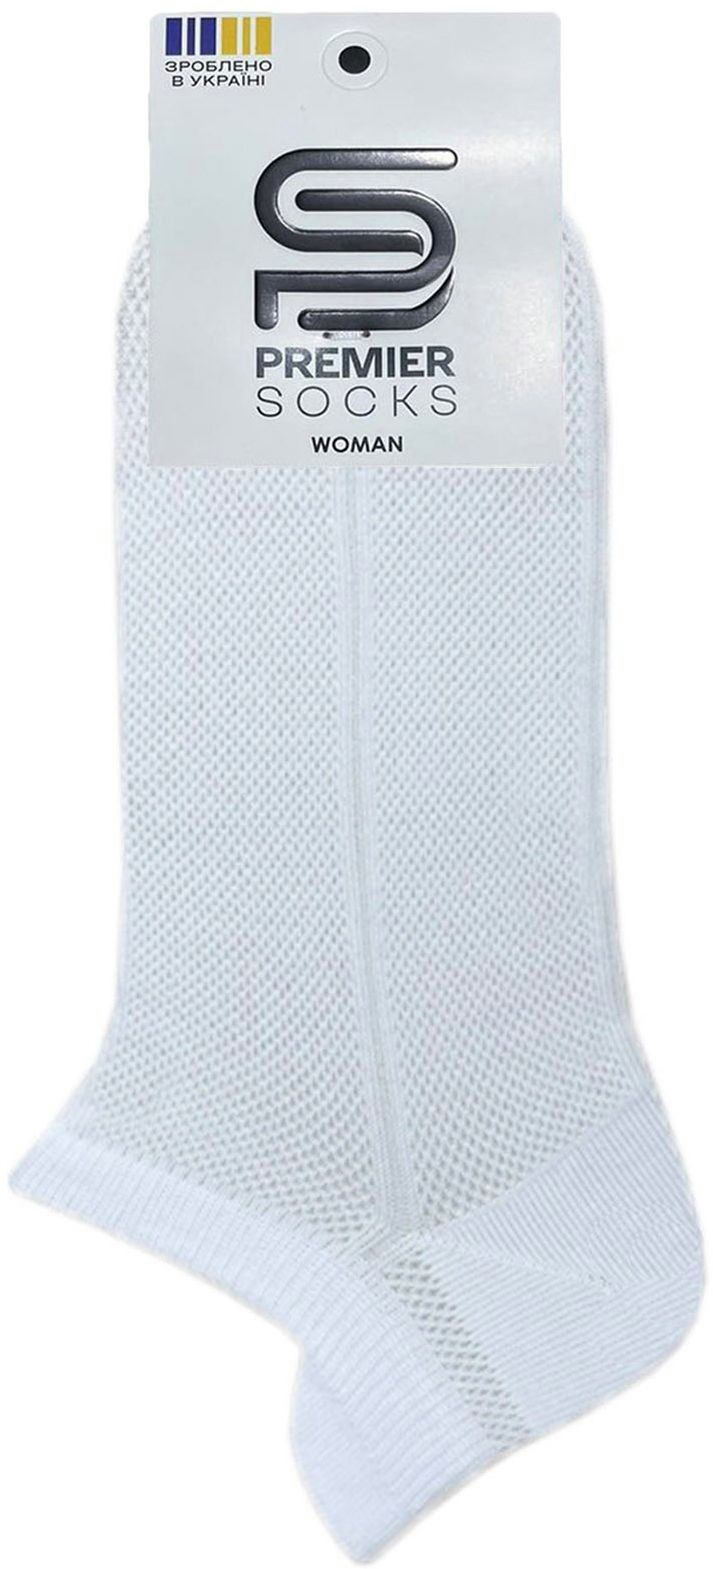 Носки женские Premier Socks 36-40 1 пара белые (4820163318783) фото 2